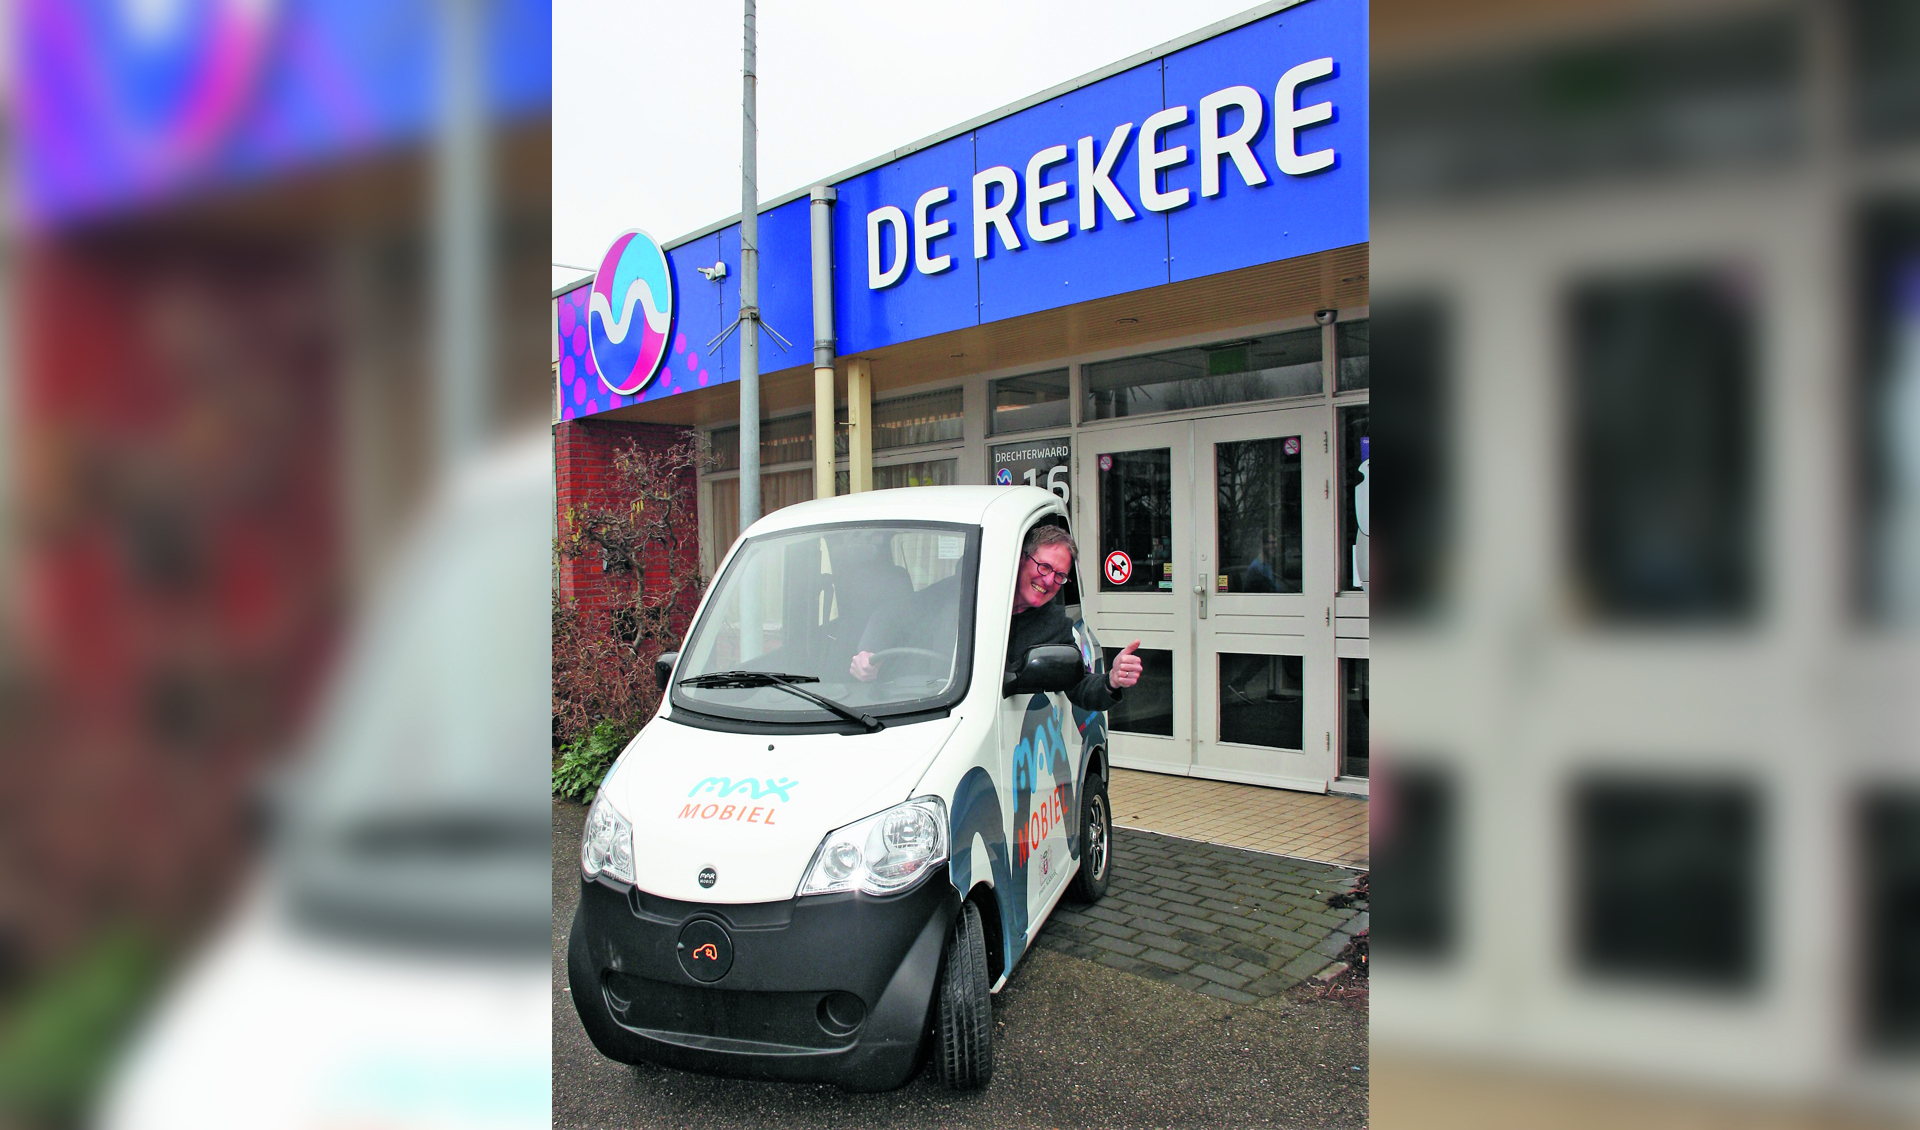 Wijkcentrum De Rekere beschikt sinds kort over een Max Mobiel. (Foto: aangeleverd)